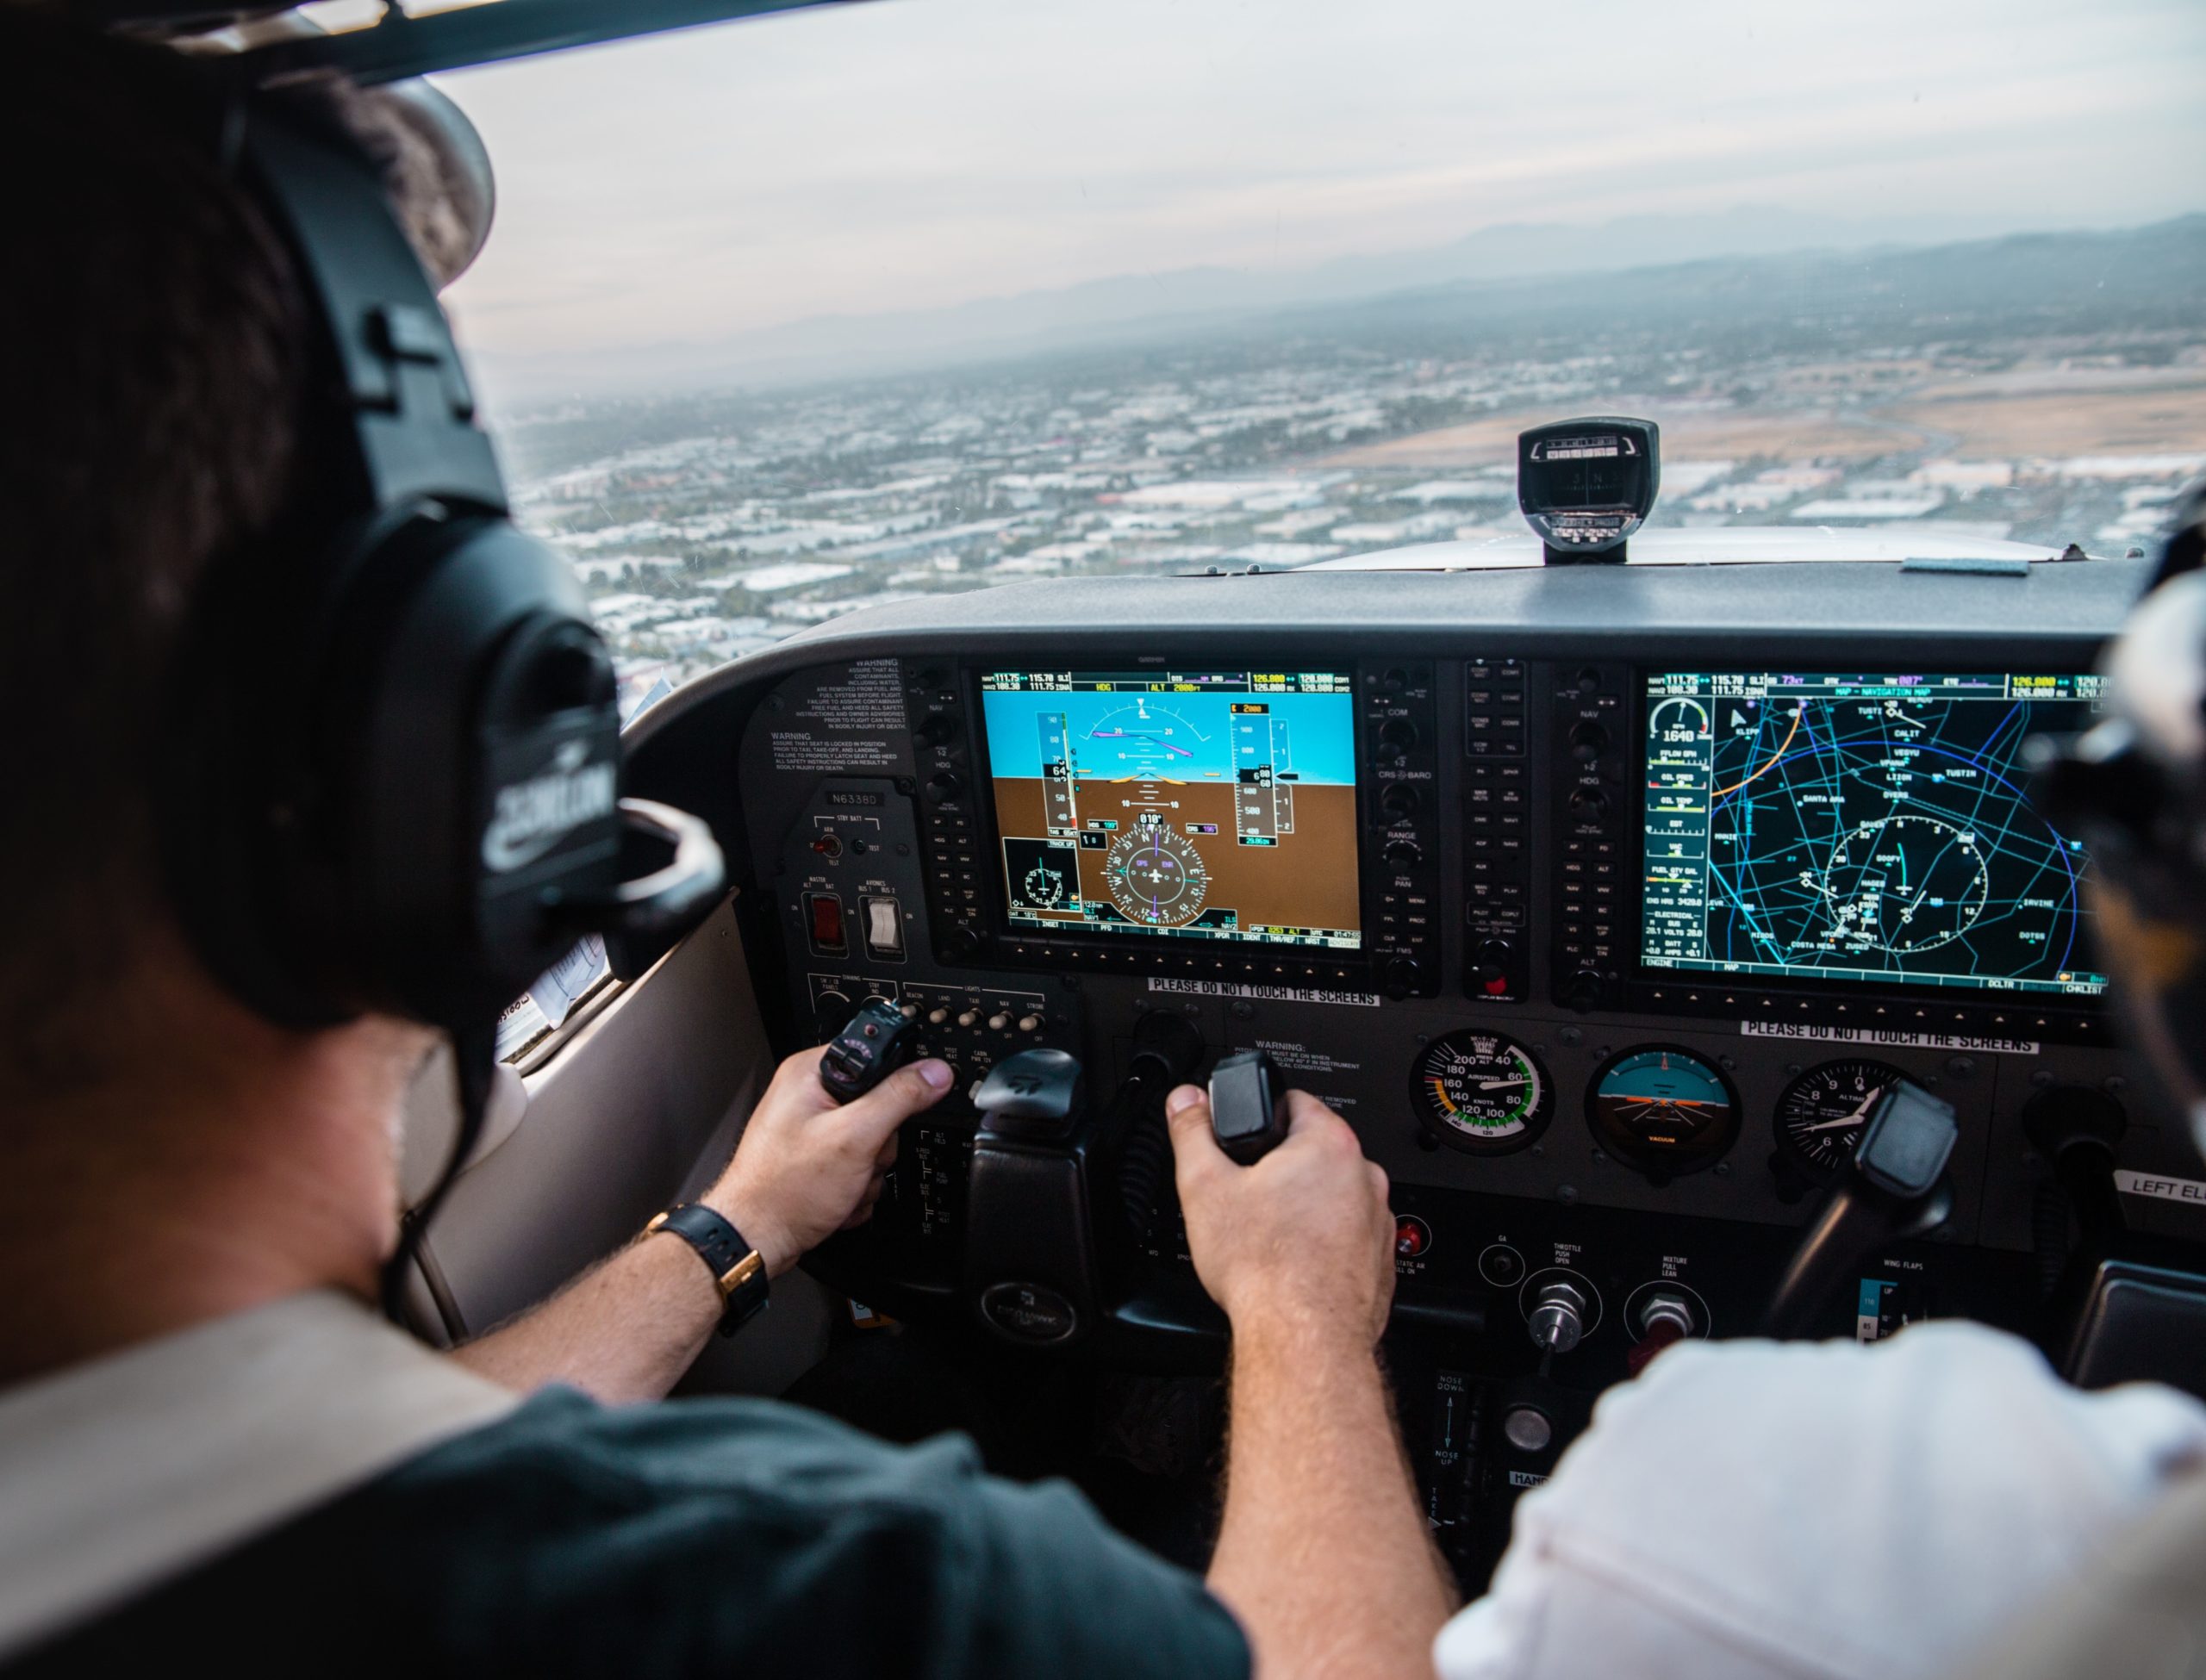 électronique de puissance aéronautique, alimentation pour radar ou système de pilotage aéronautique